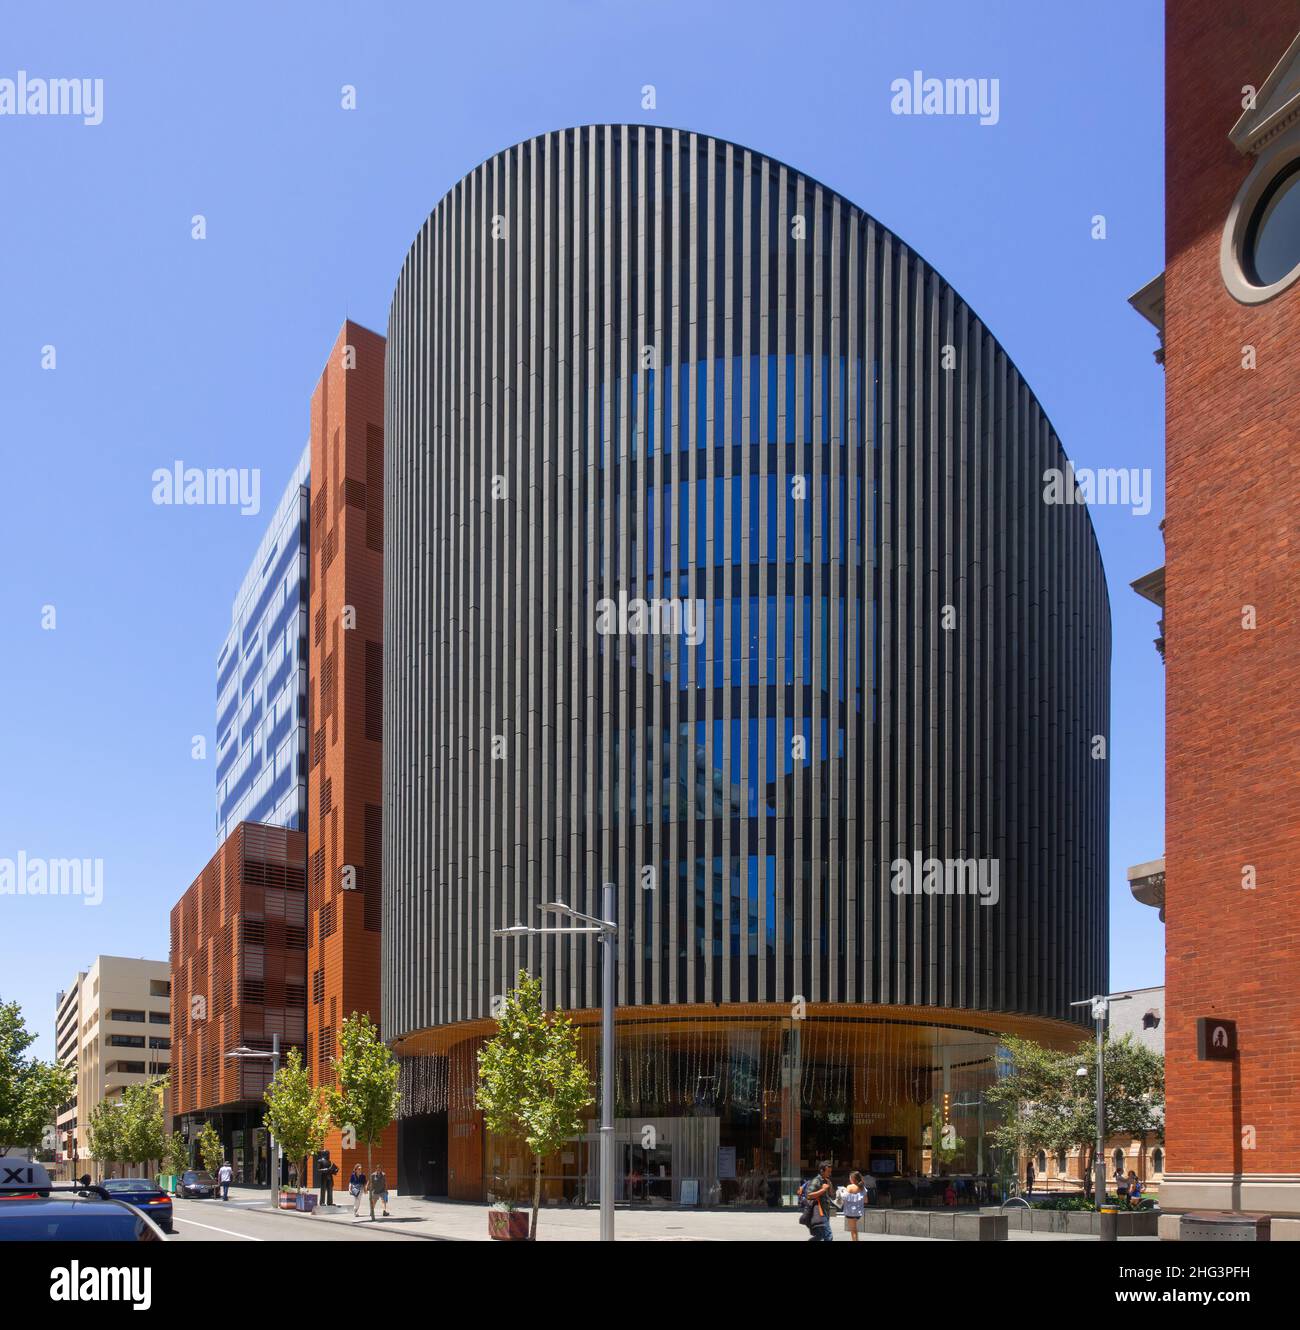 Perth, Australia - Biblioteca della Città di Perth di Kerry Hill Architects Foto Stock